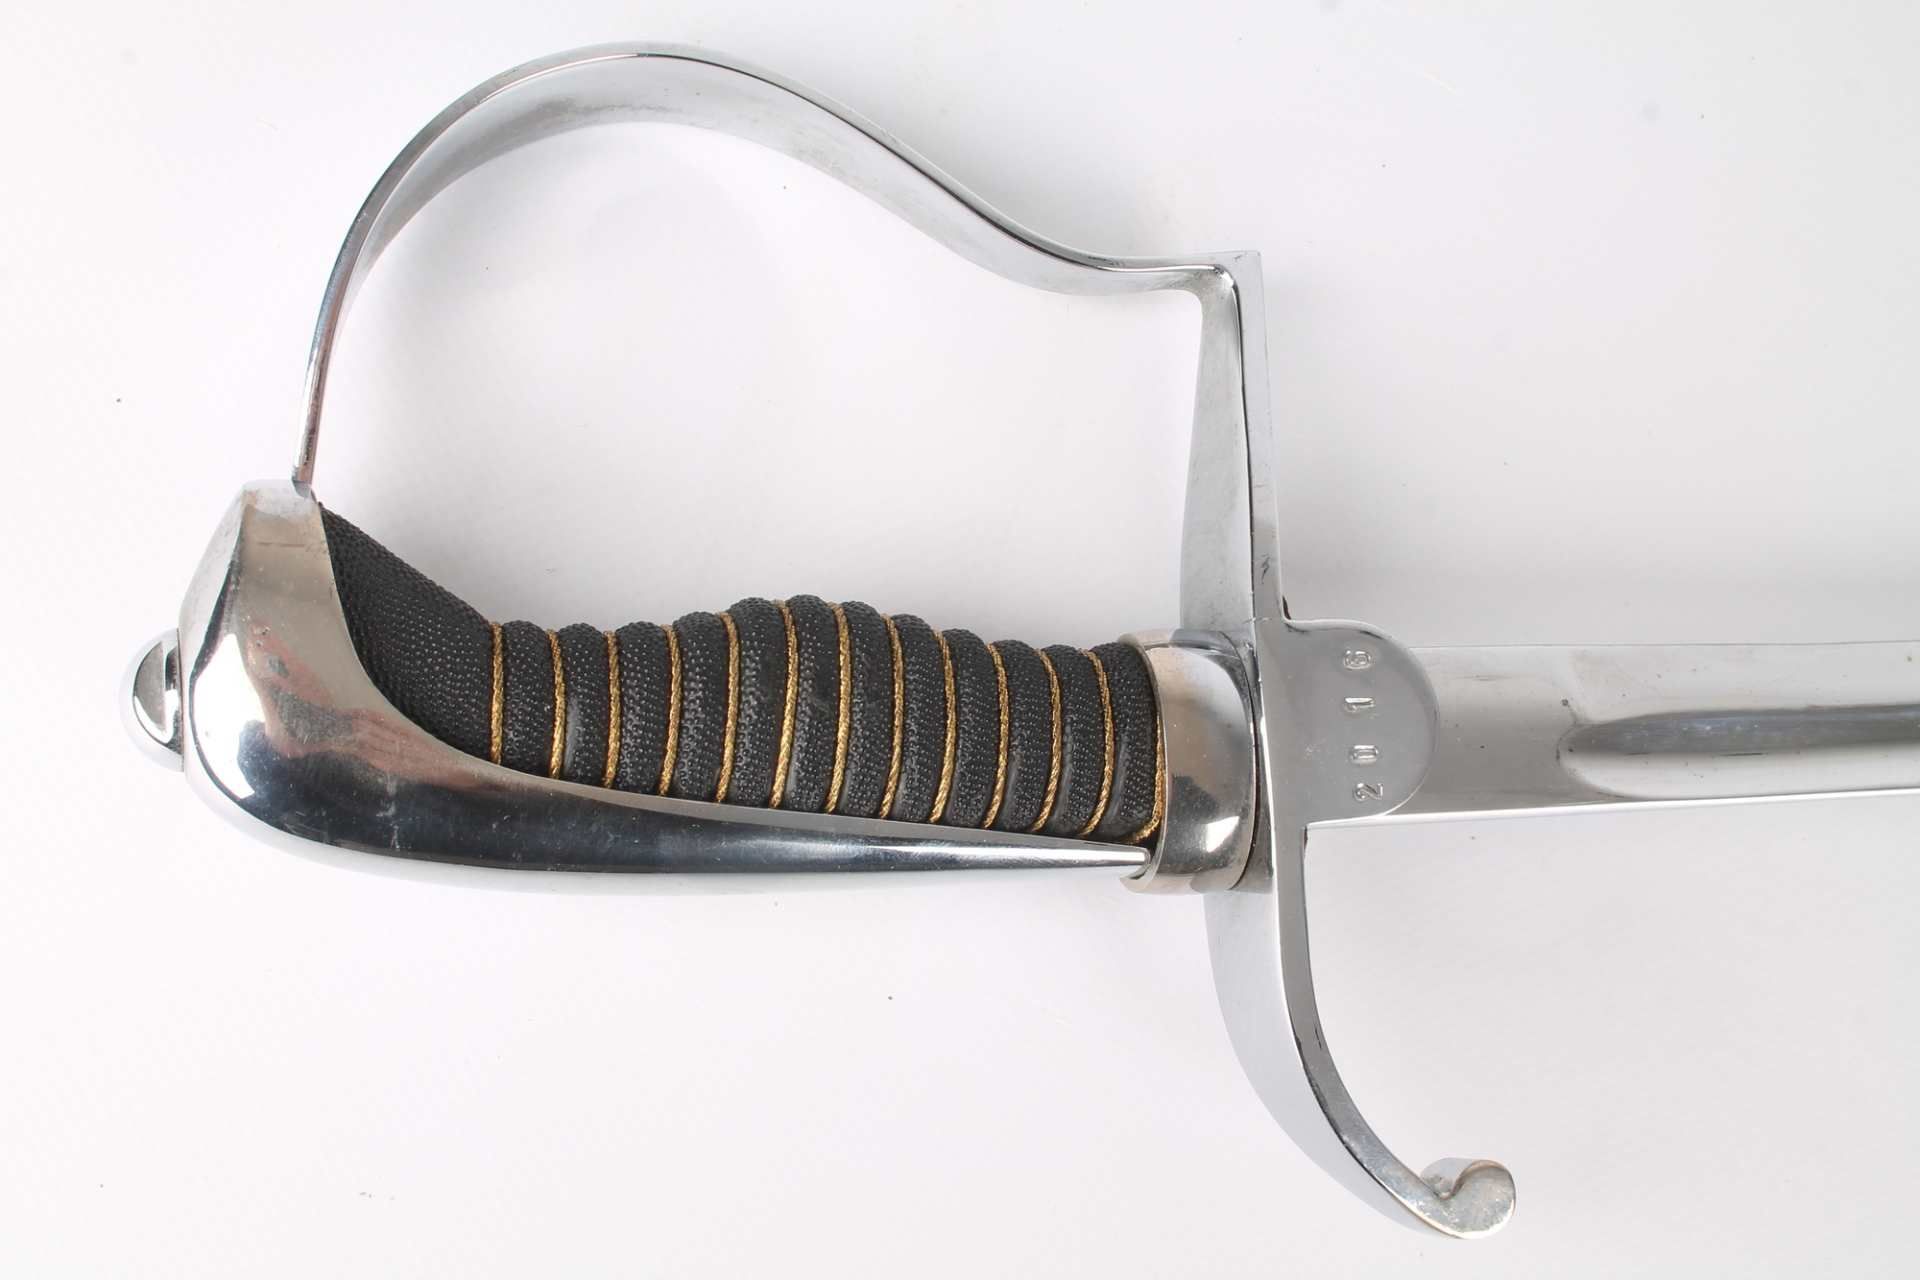 NVA Offizier's Paradesäbel, GDR saber sword, - Image 7 of 8